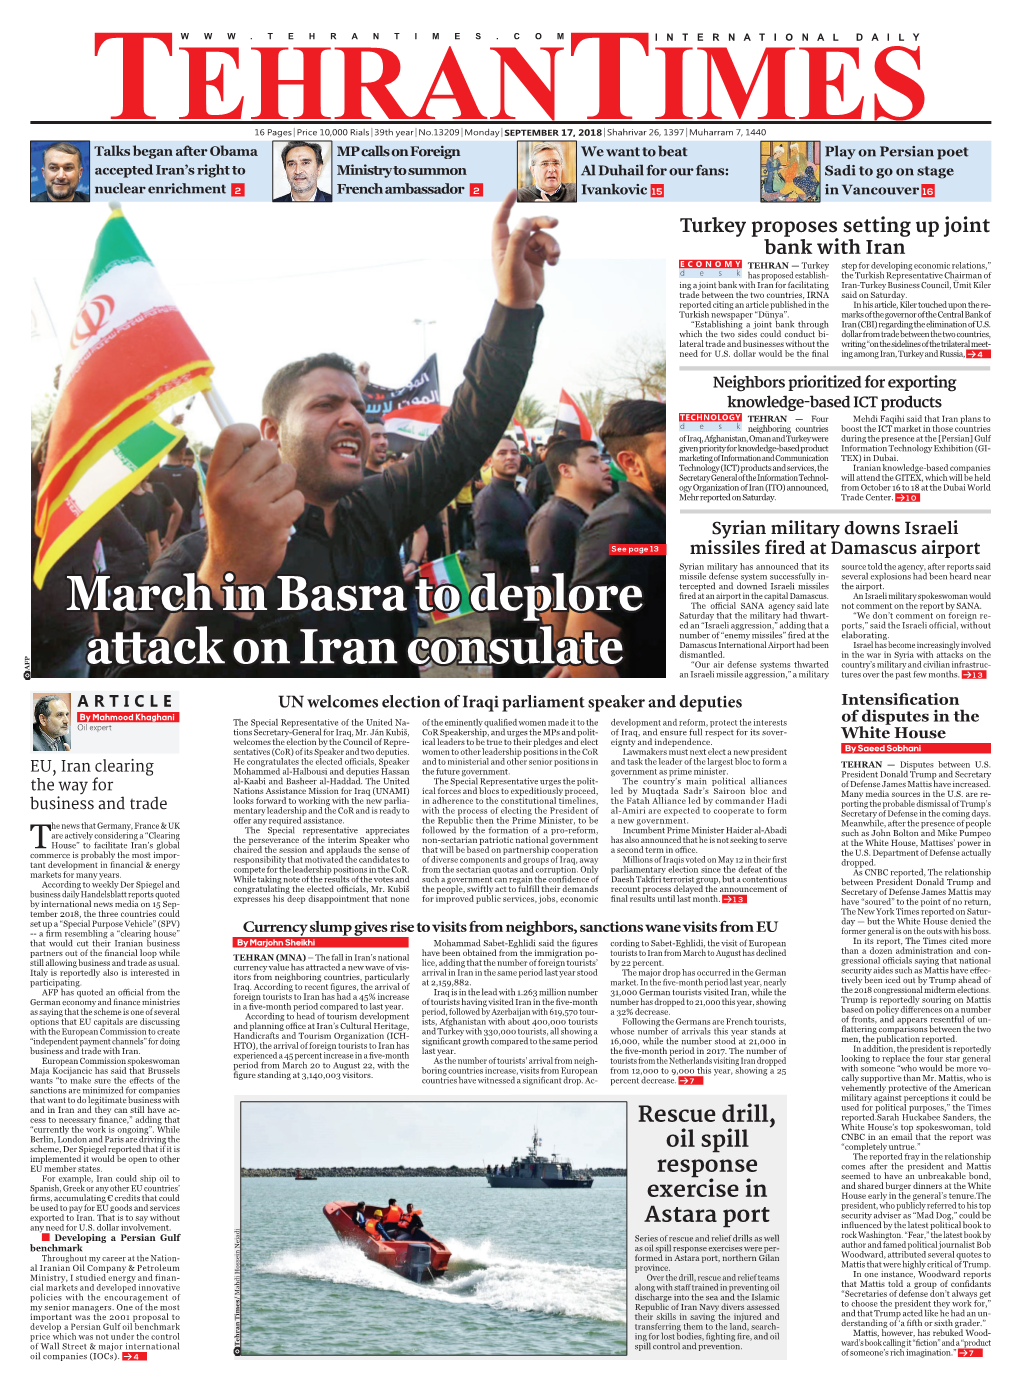 March in Basra to Deplore Attack on Iran Consulate